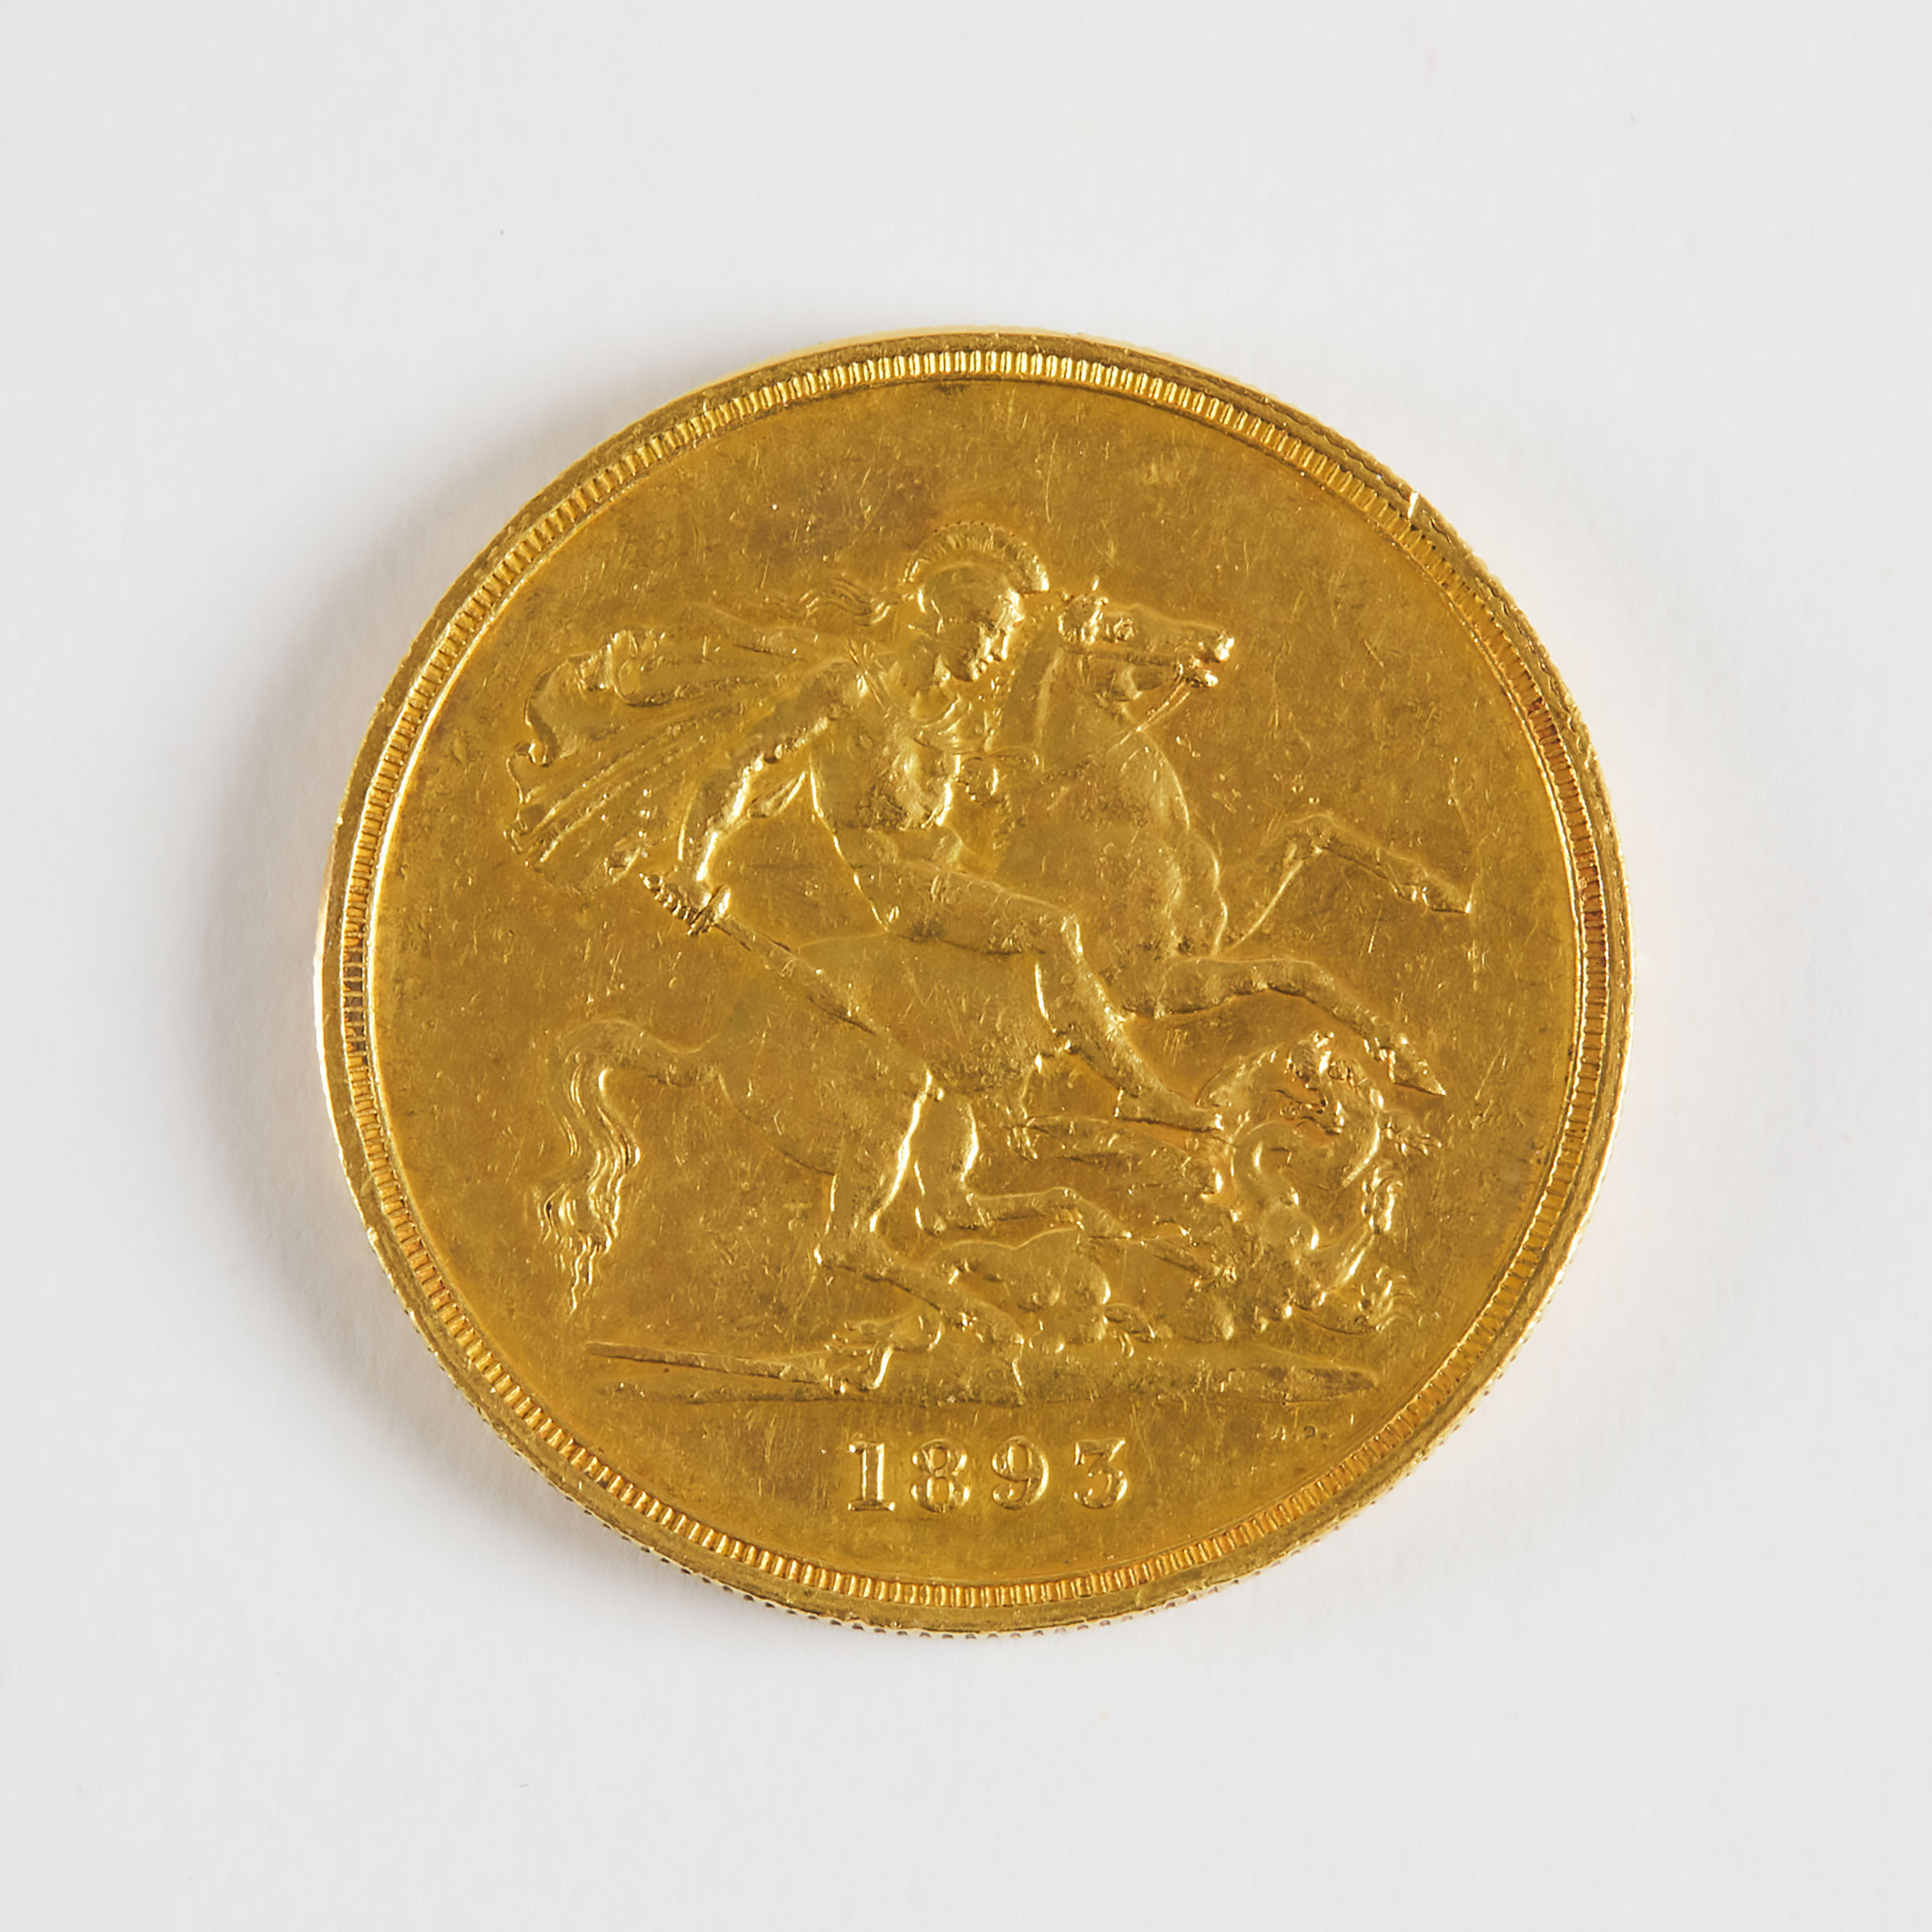 British 1893 Five Pound Gold Coin